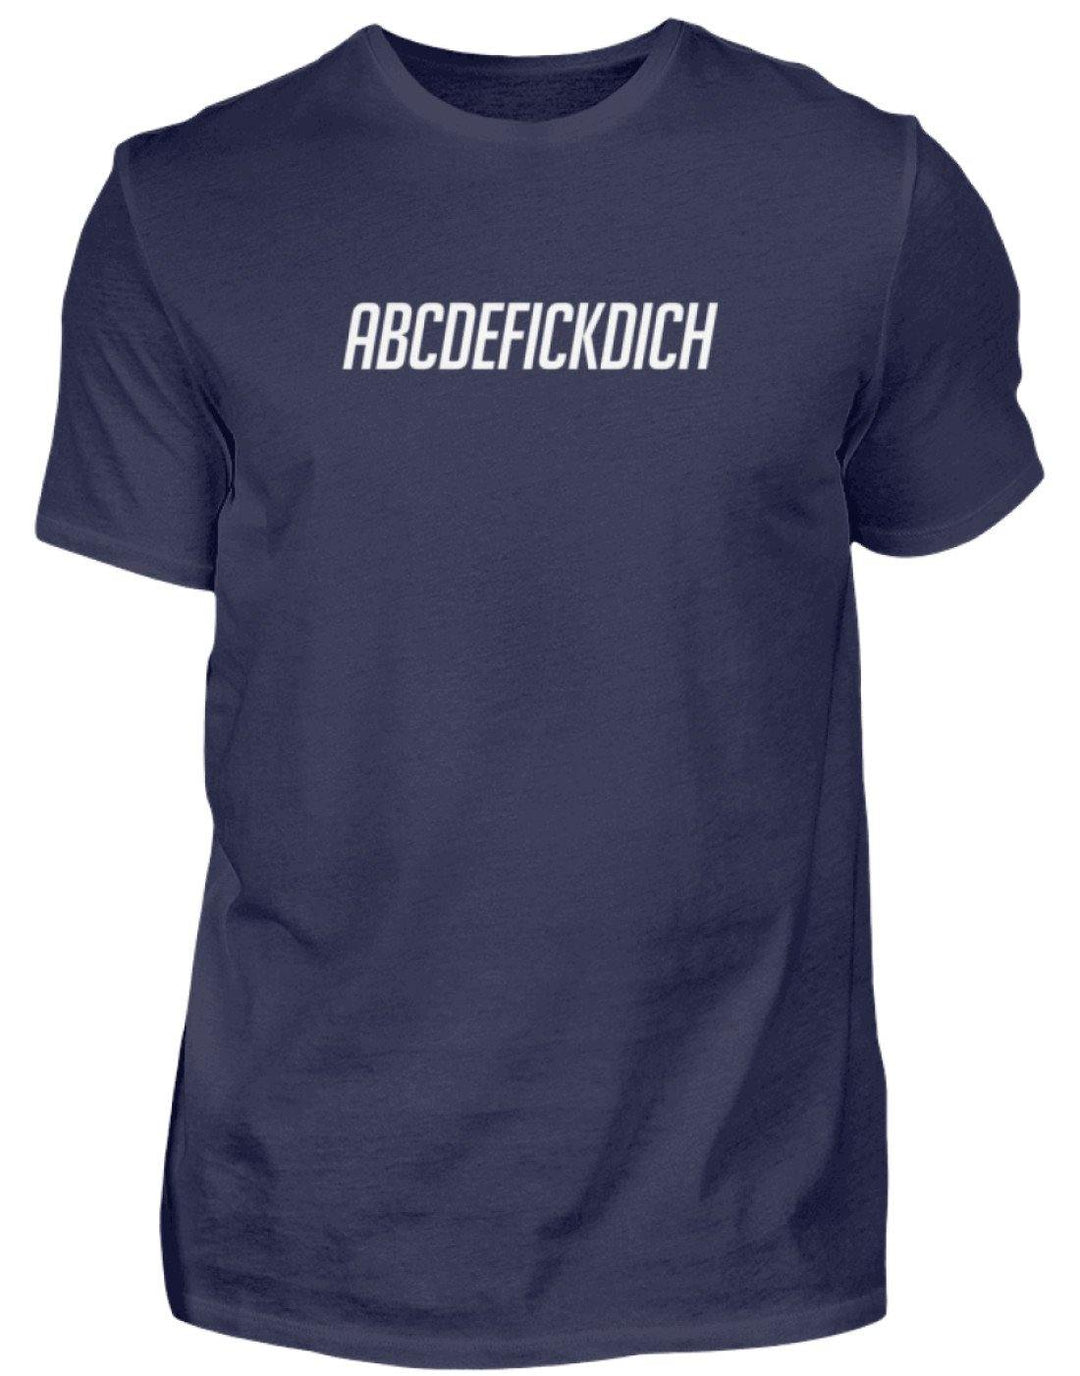 ABCDEFICKDICH - WORDS ON SHIRTS  - Herren Shirt - Words on Shirts Sag es mit dem Mittelfinger Shirts Hoodies Sweatshirt Taschen Gymsack Spruch Sprüche Statement